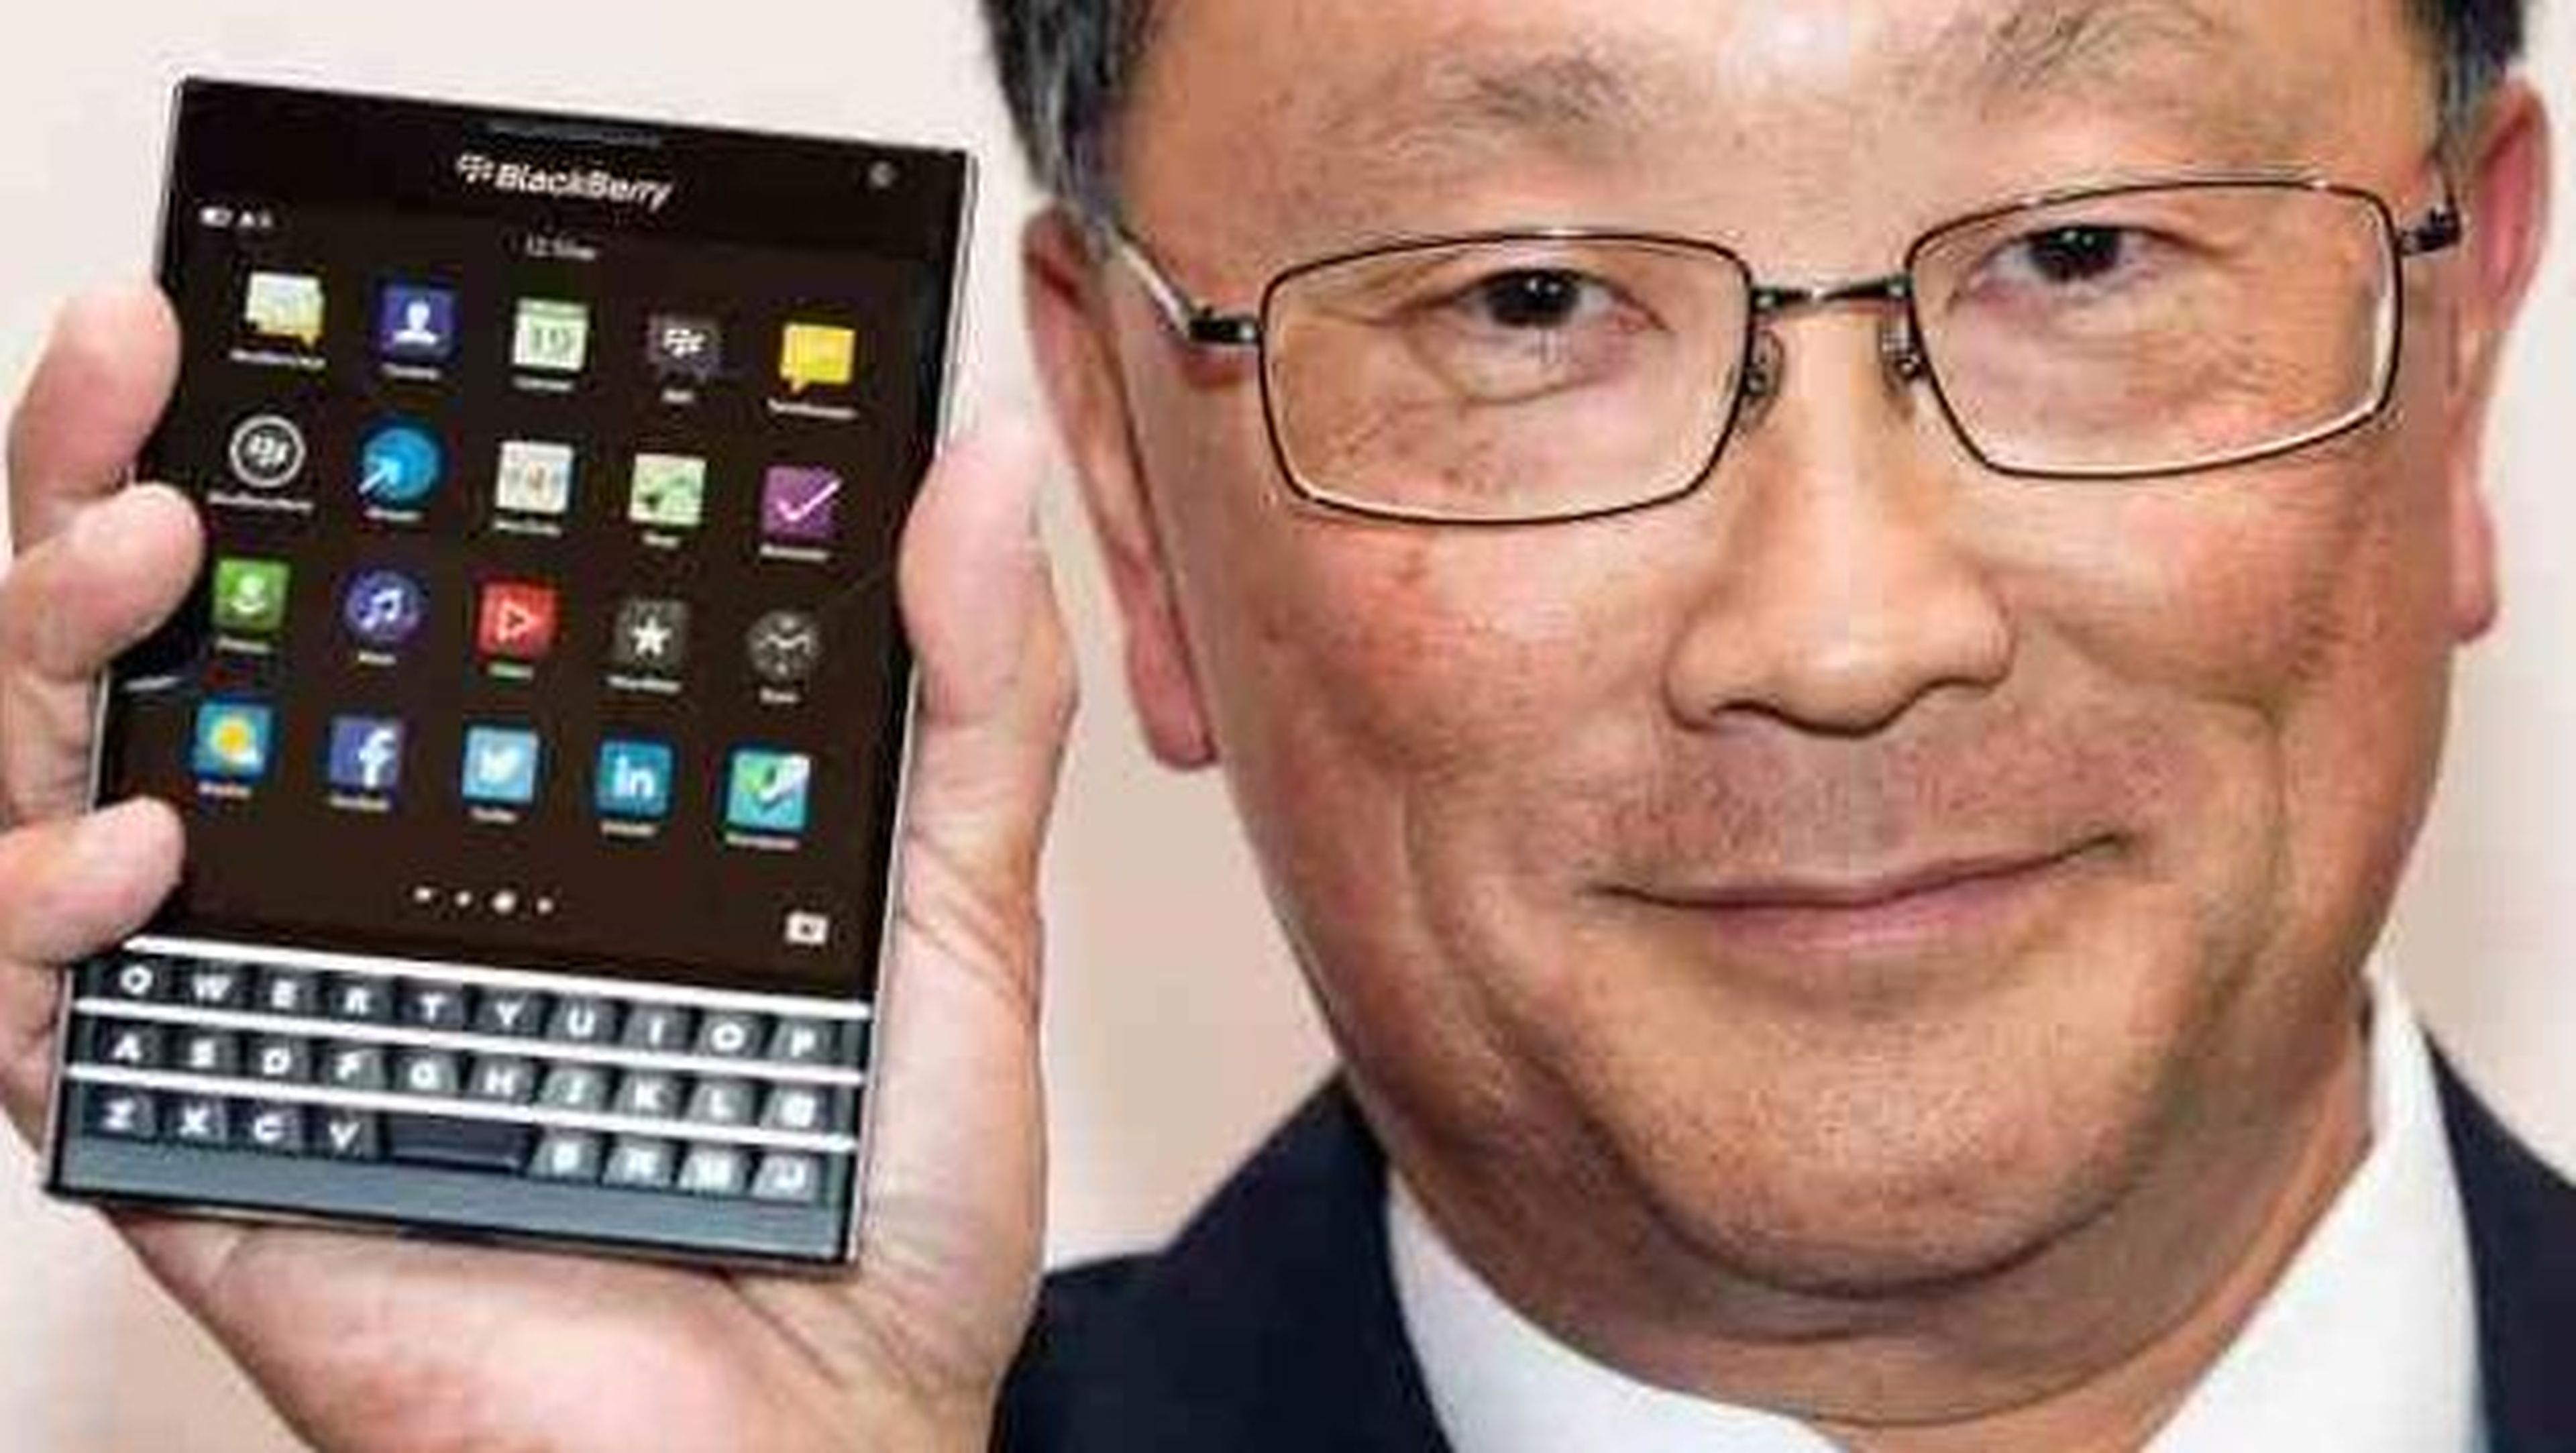 BlackBerry ofrece dinero en efectivo a cambio del iPhone